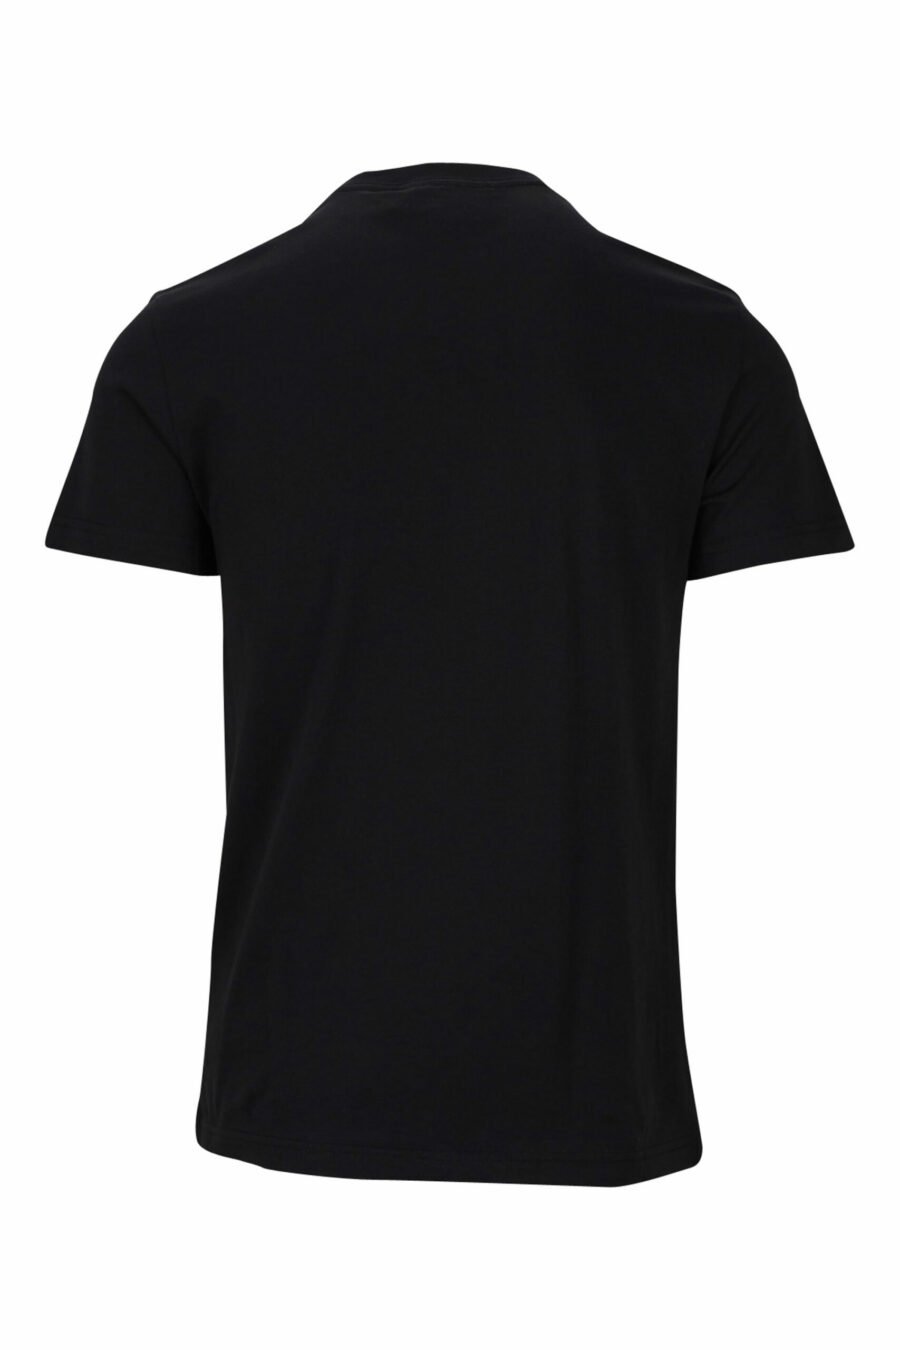 T-shirt preta com mini-logotipo circular dourado - 8052019468465 1 à escala